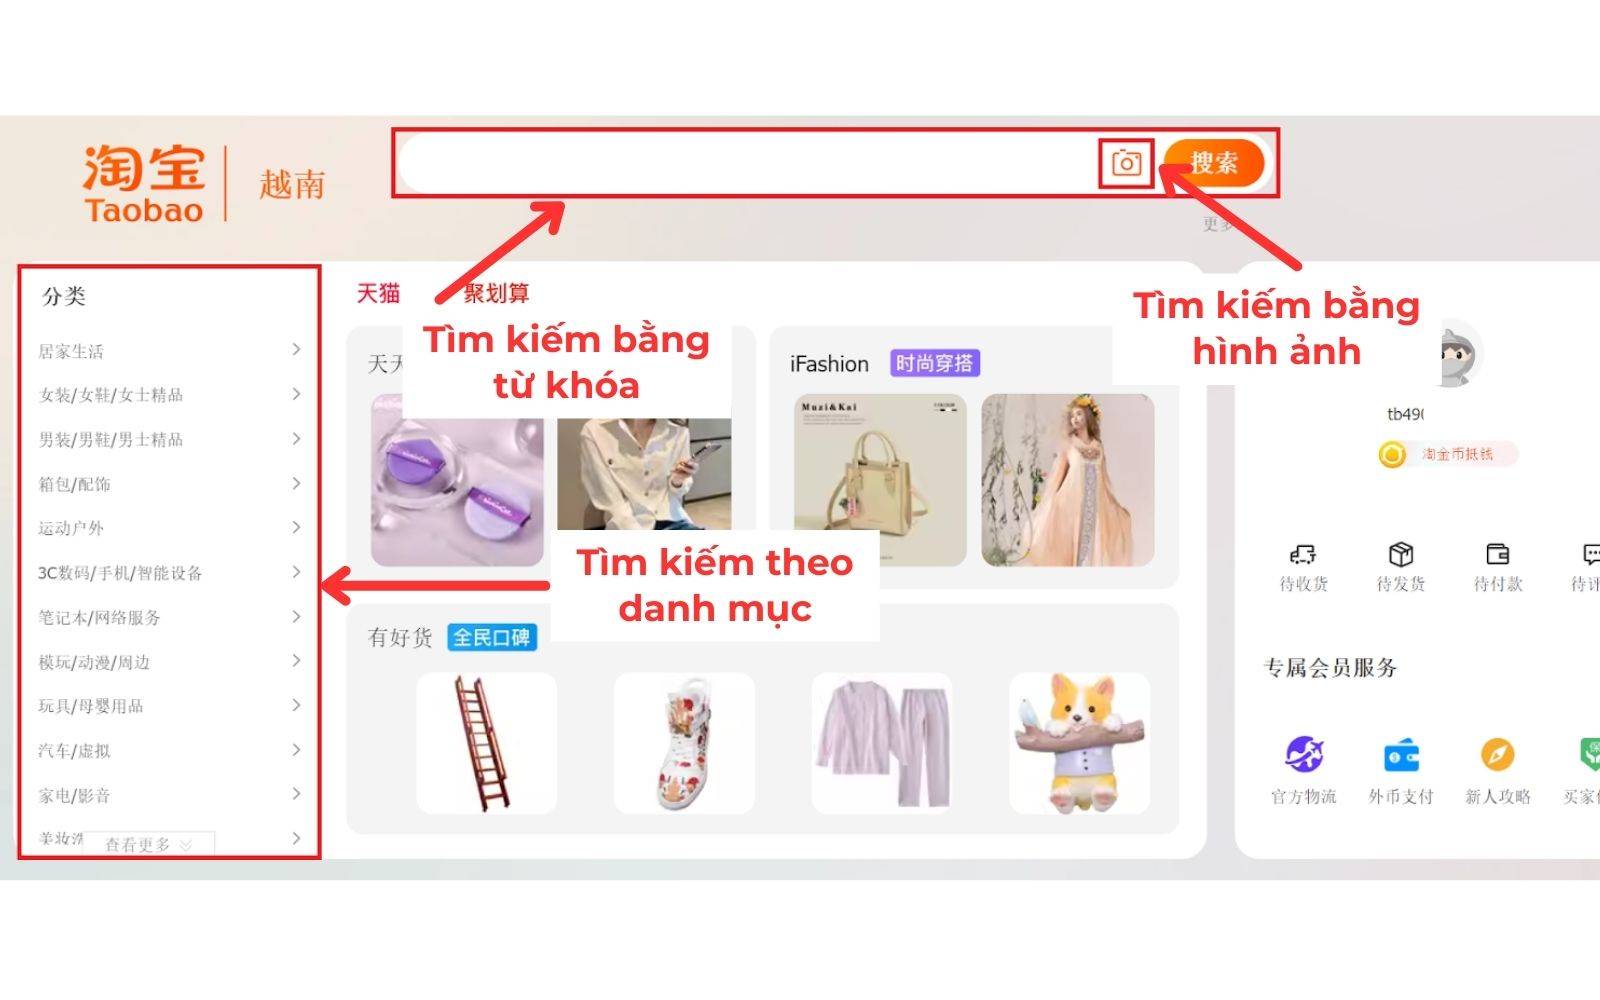 Có thể tìm kiếm sản phẩm cần order đồ taobao.com bằng nhiều cách